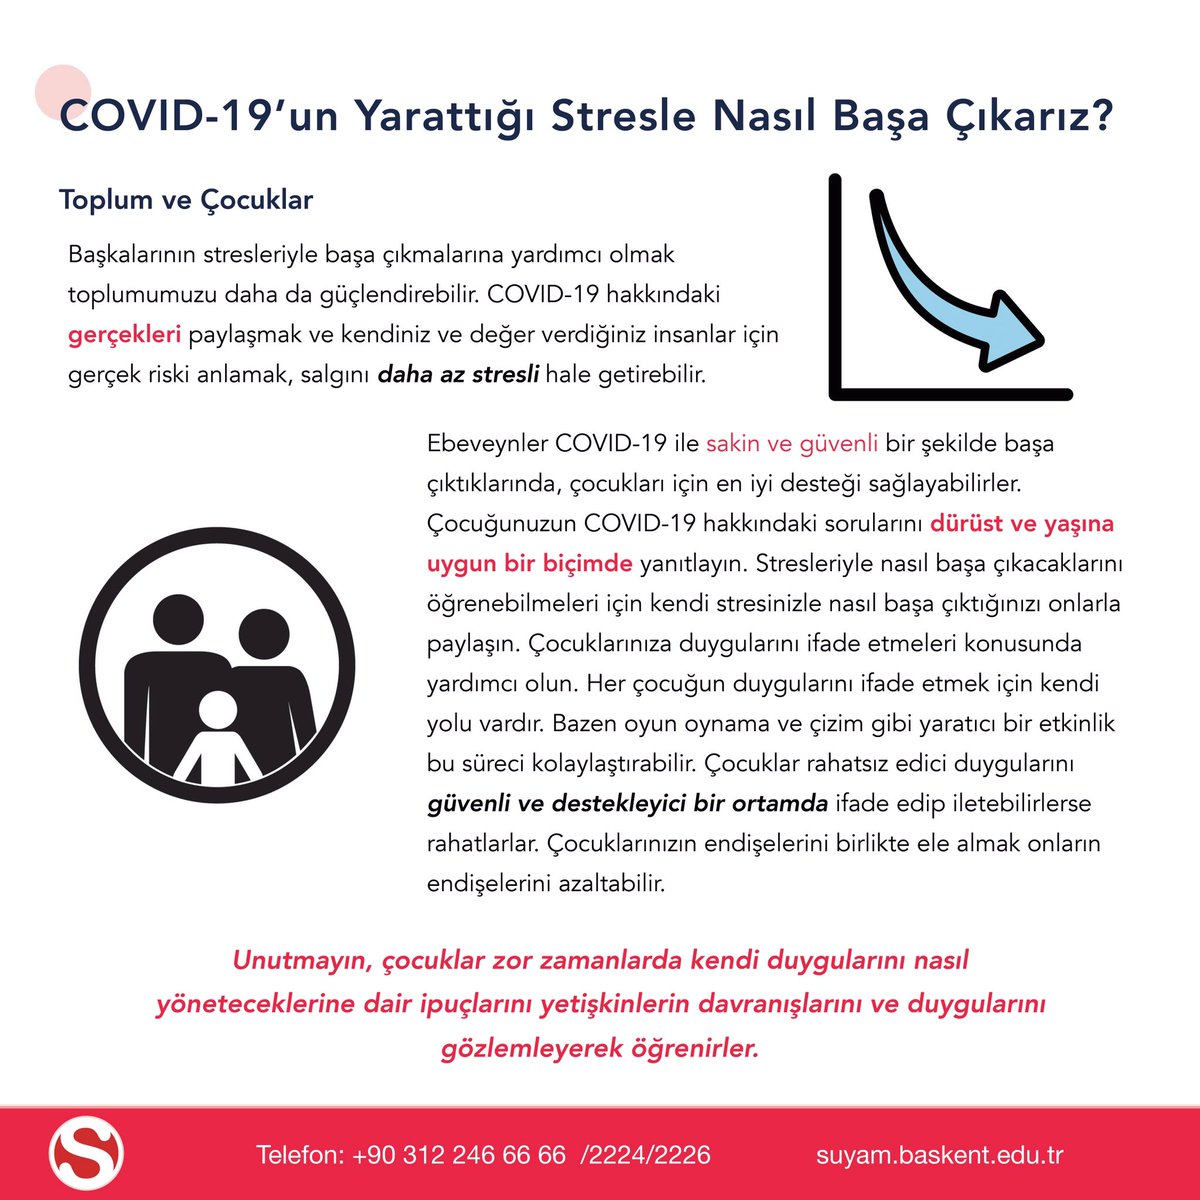 COVID-19’un yarattığı stresle başa çıkma yöntemlerini Stres Yönetimi Uygulama ve Araştırma Merkezi (SUYAM) bizler için hazırladı🍀
#başkentüniversitesi #suyam #covid19 #stres #stresyönetimi